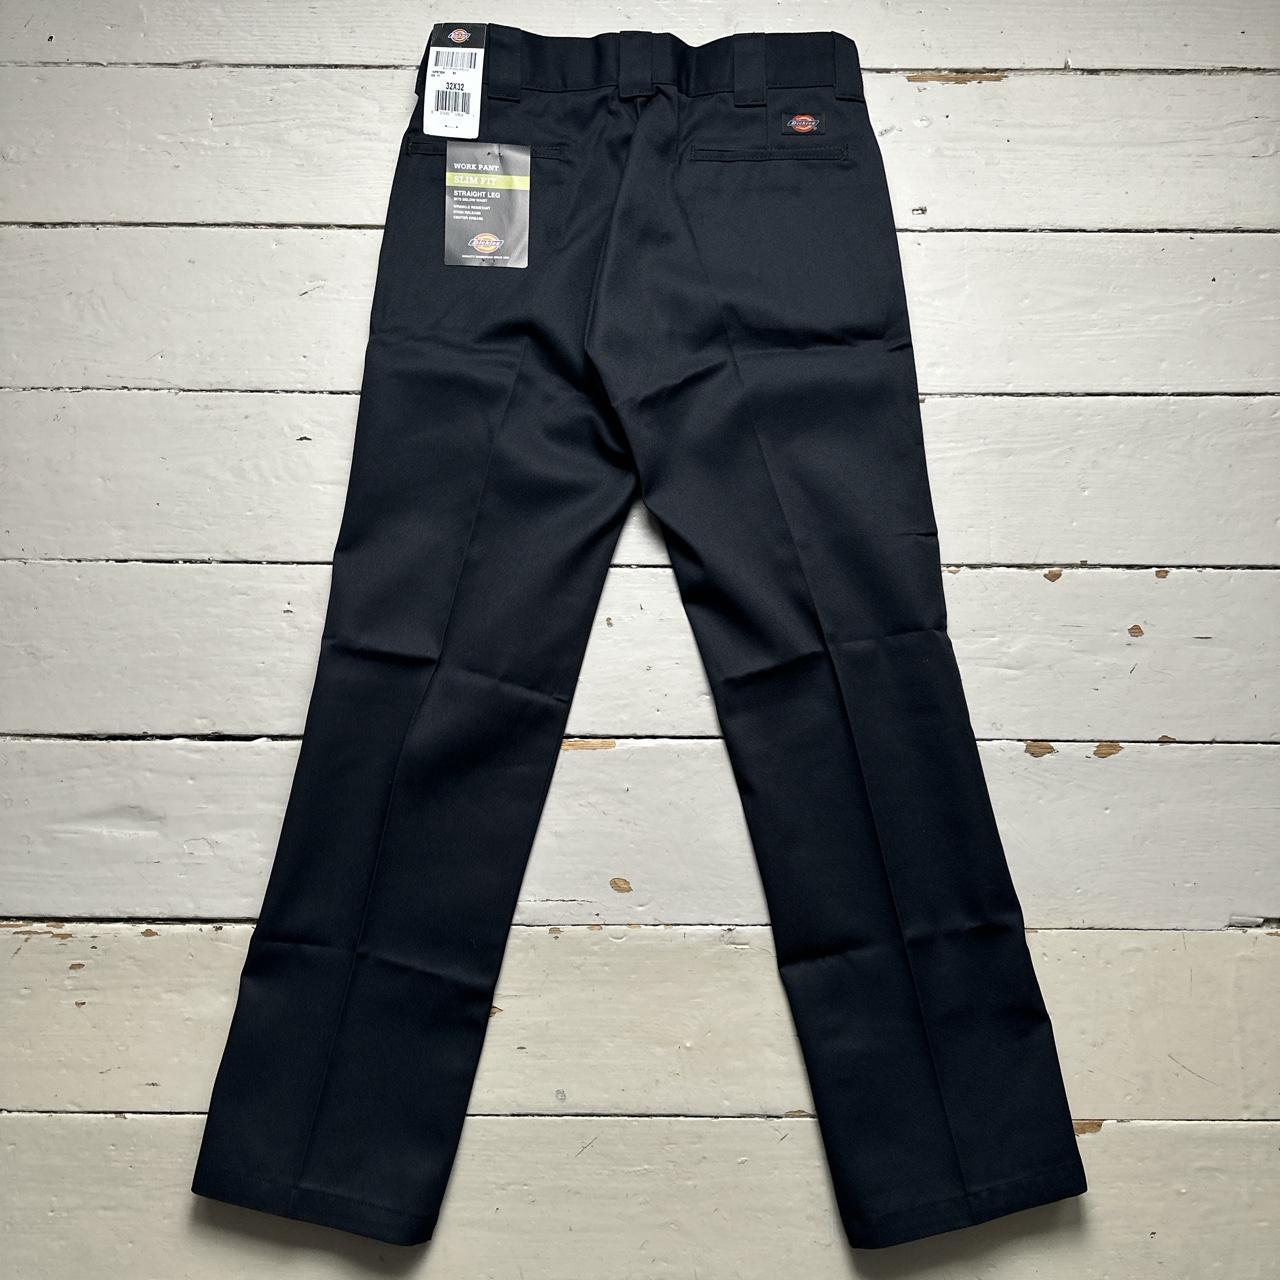 Dickies Black Slim Fit Work Pants Cargo Trousers